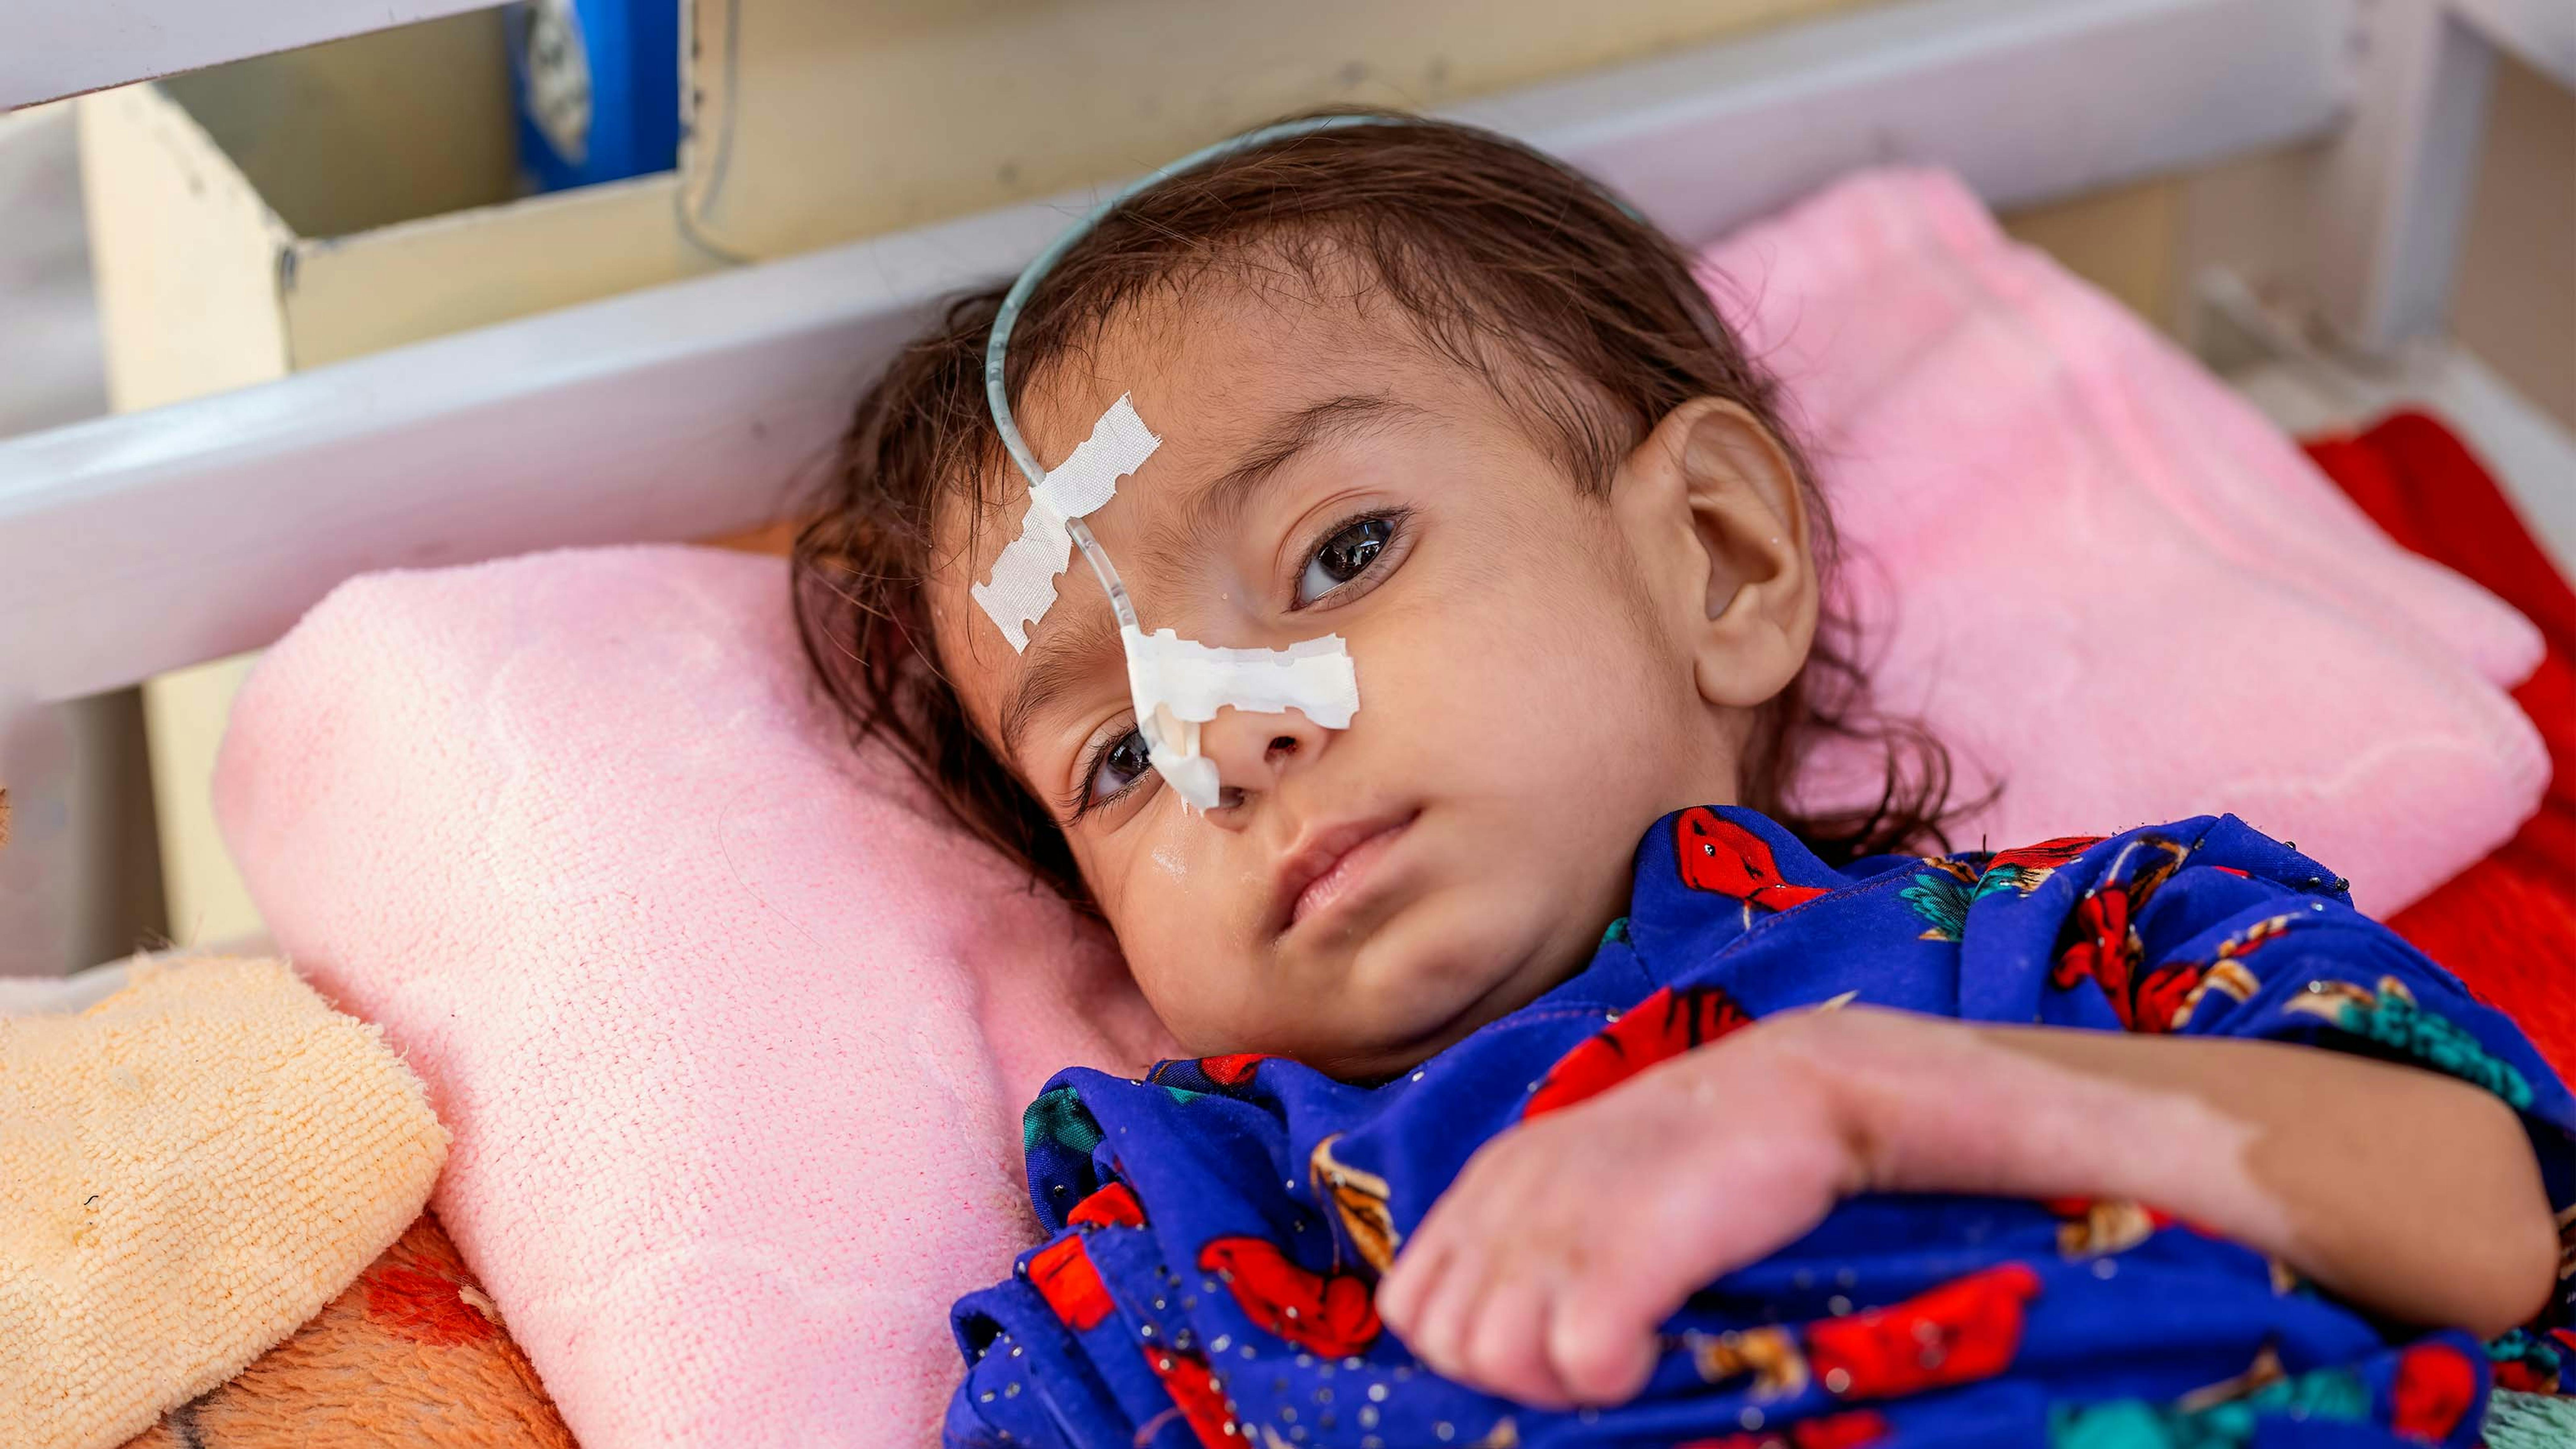 Afghanistan, Amina di 8 mesi si sta riprendendo da una grave malnutrizione acuta con complicazioni